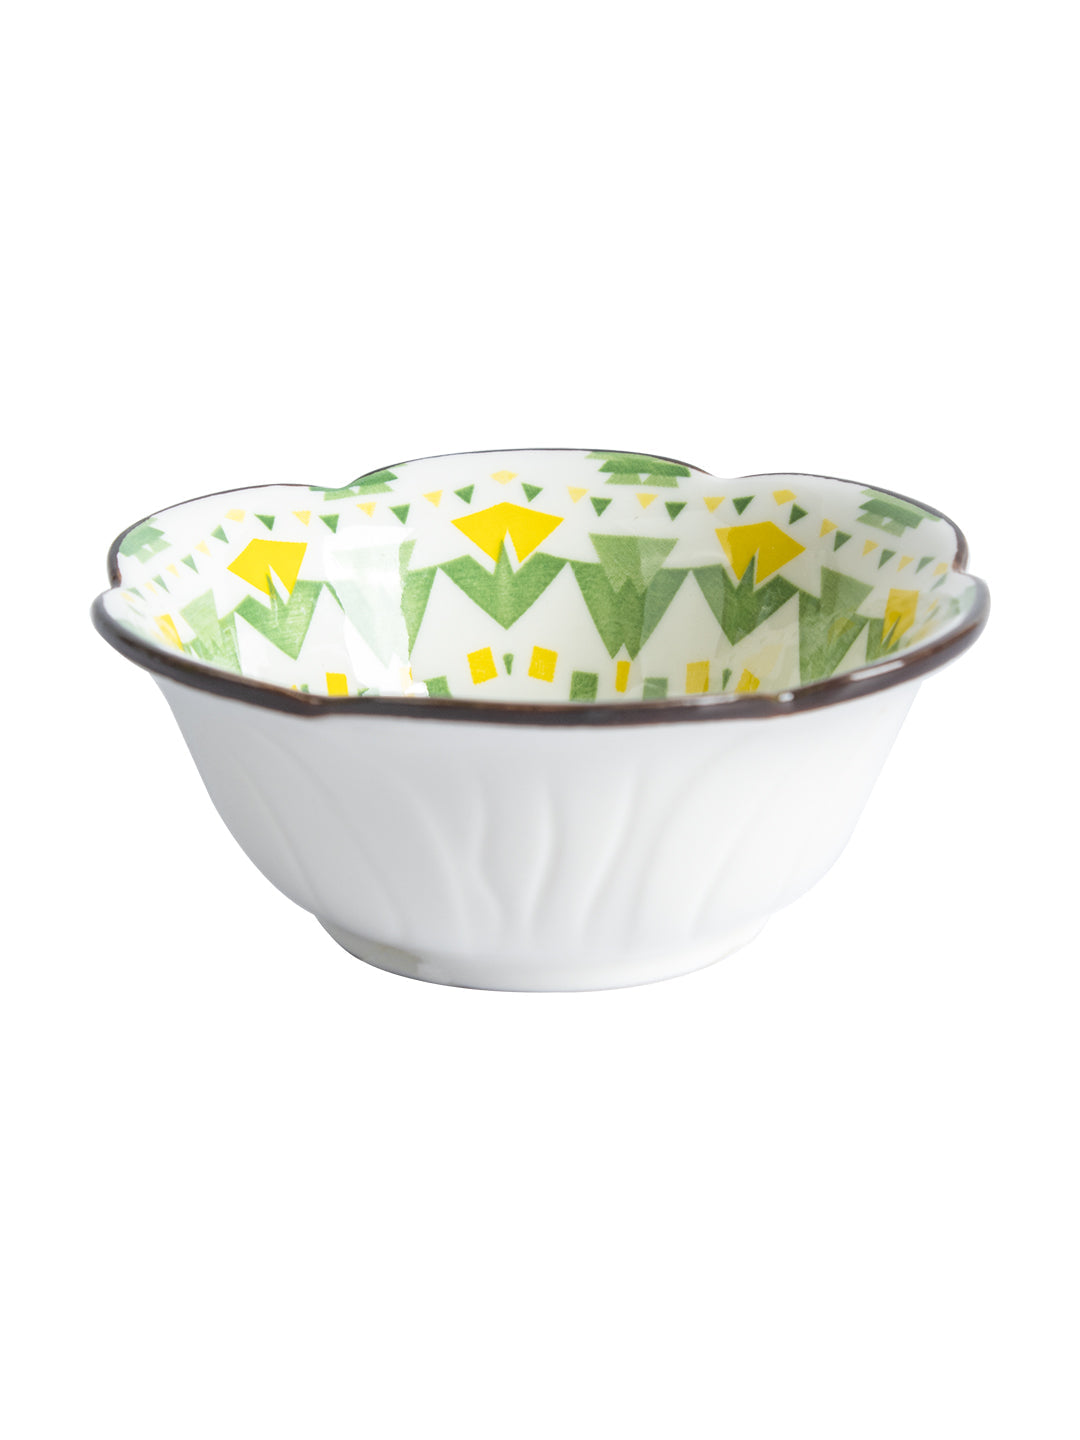 VON CASA 120 Ml Ceramic Serving Bowls - Green, Set Of 2